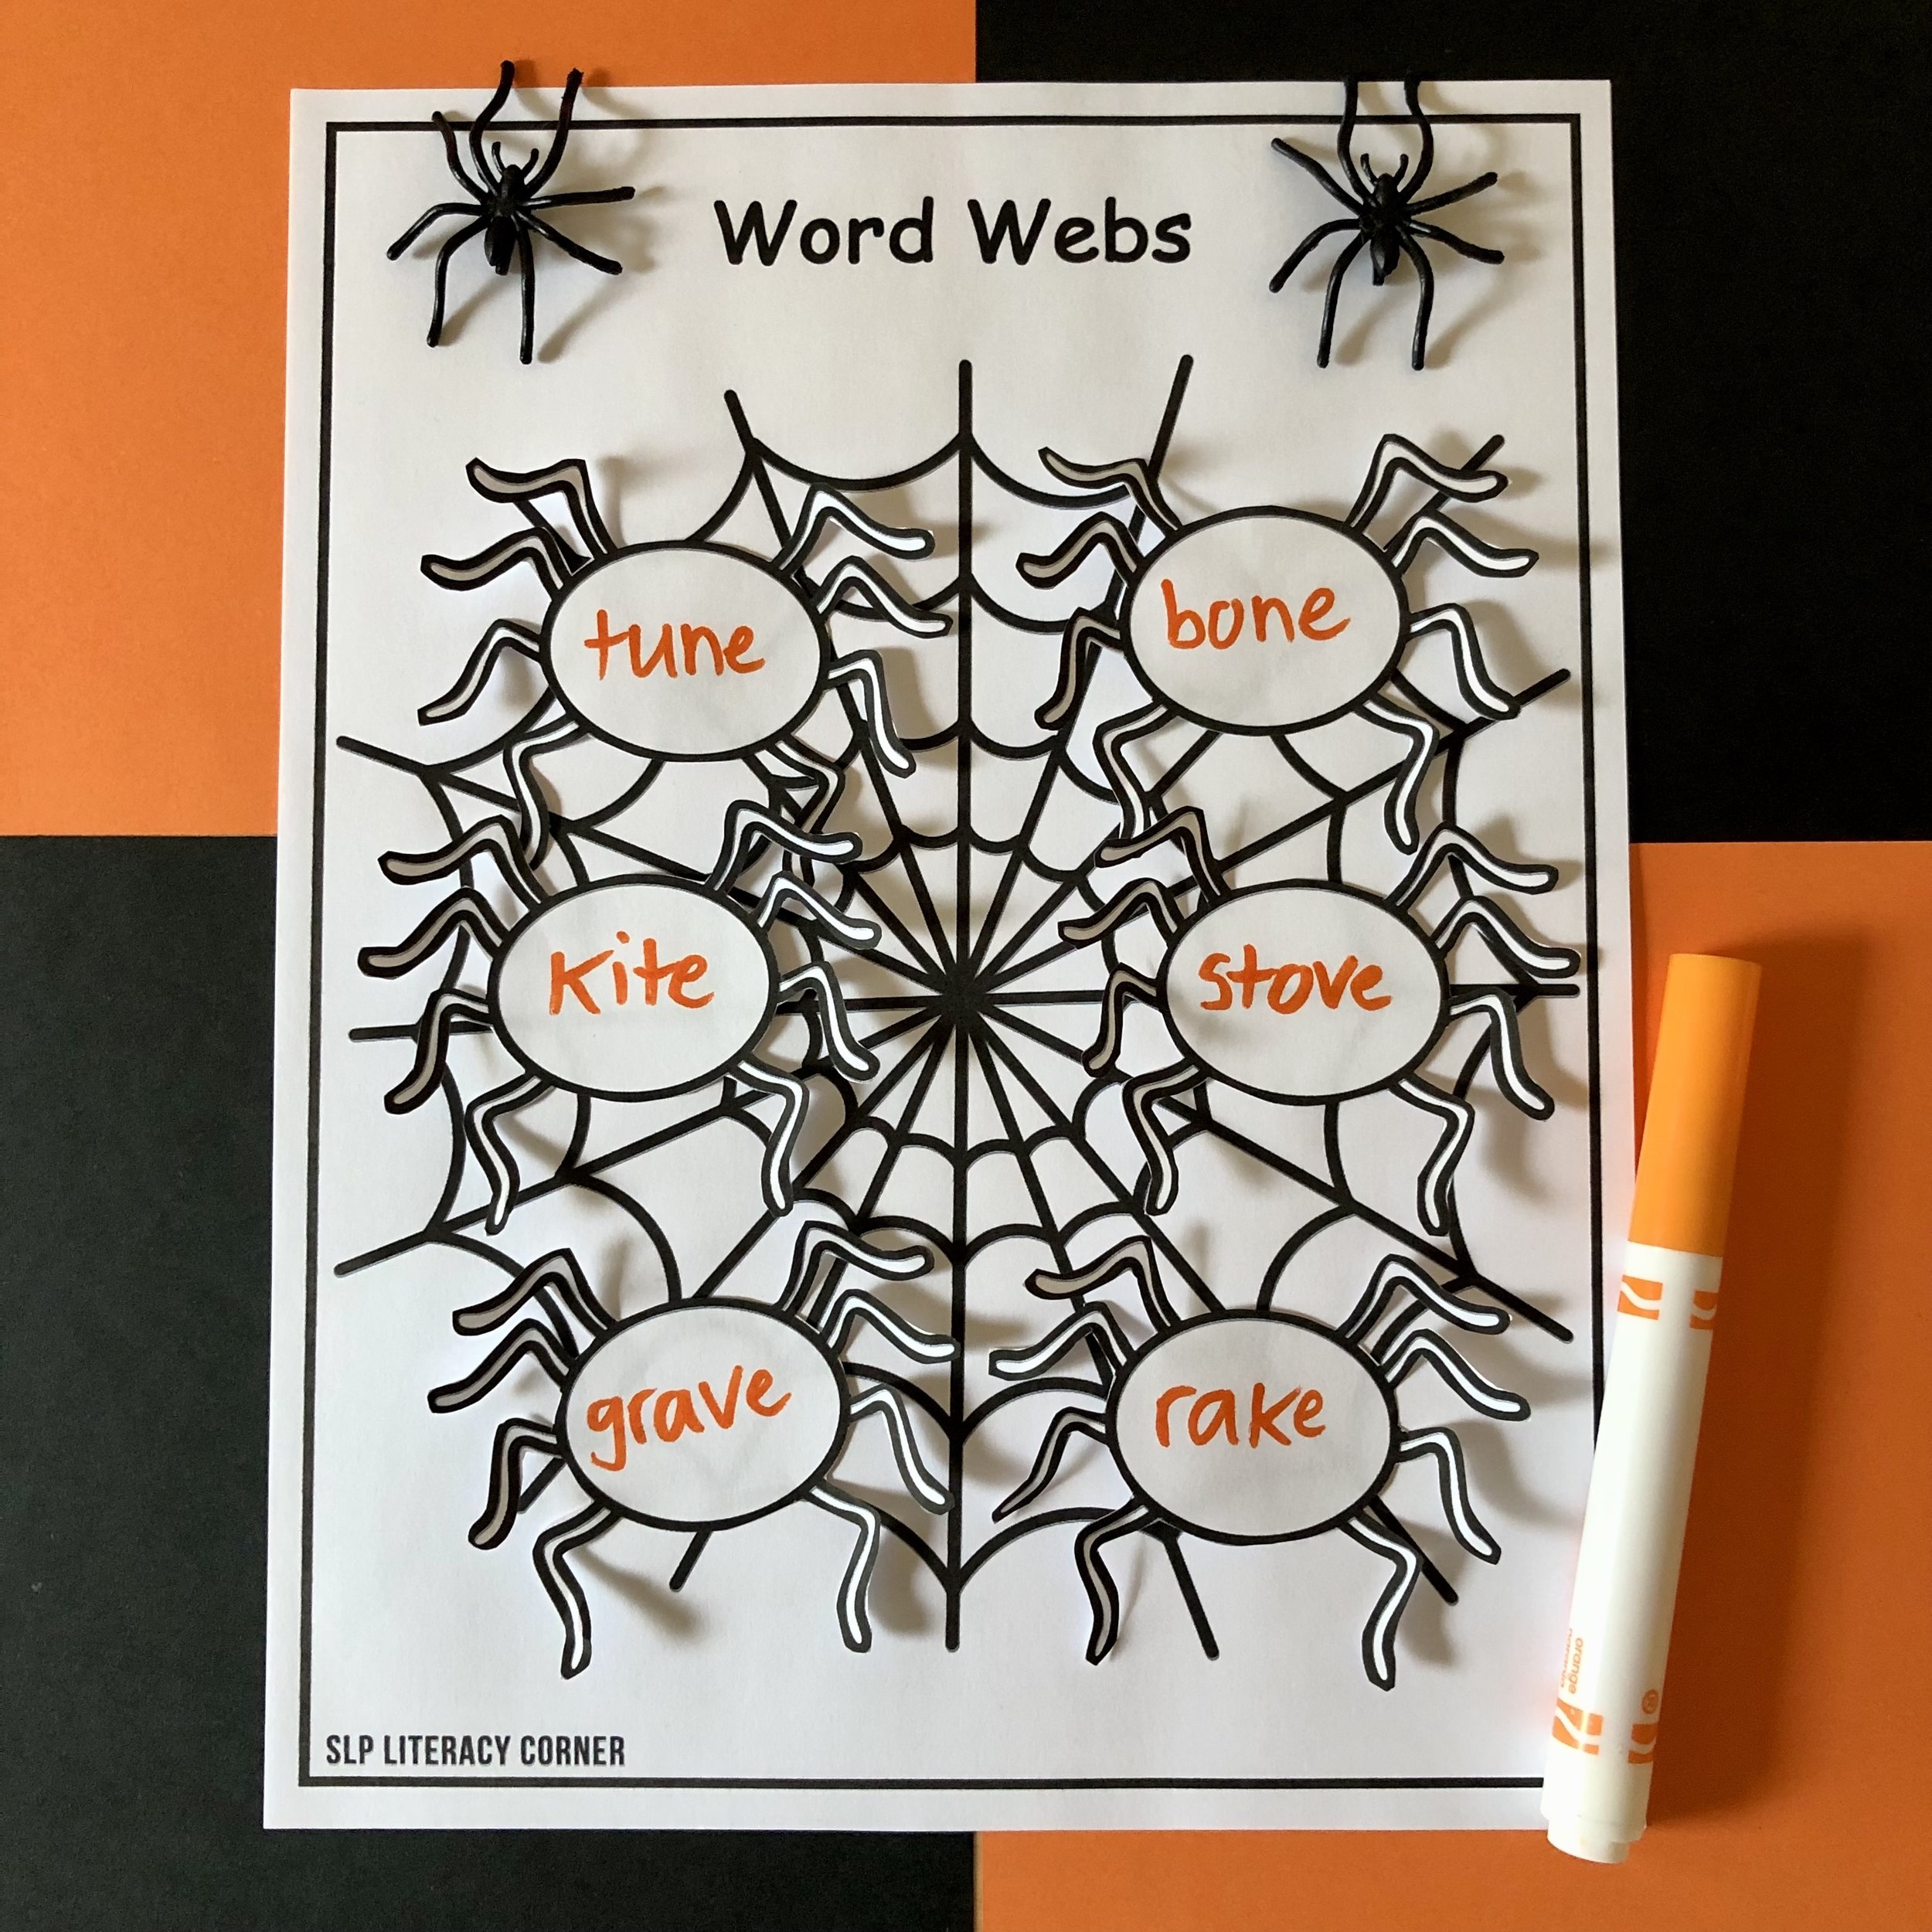 SLP Literacy Corner Word Webs 1.jpg